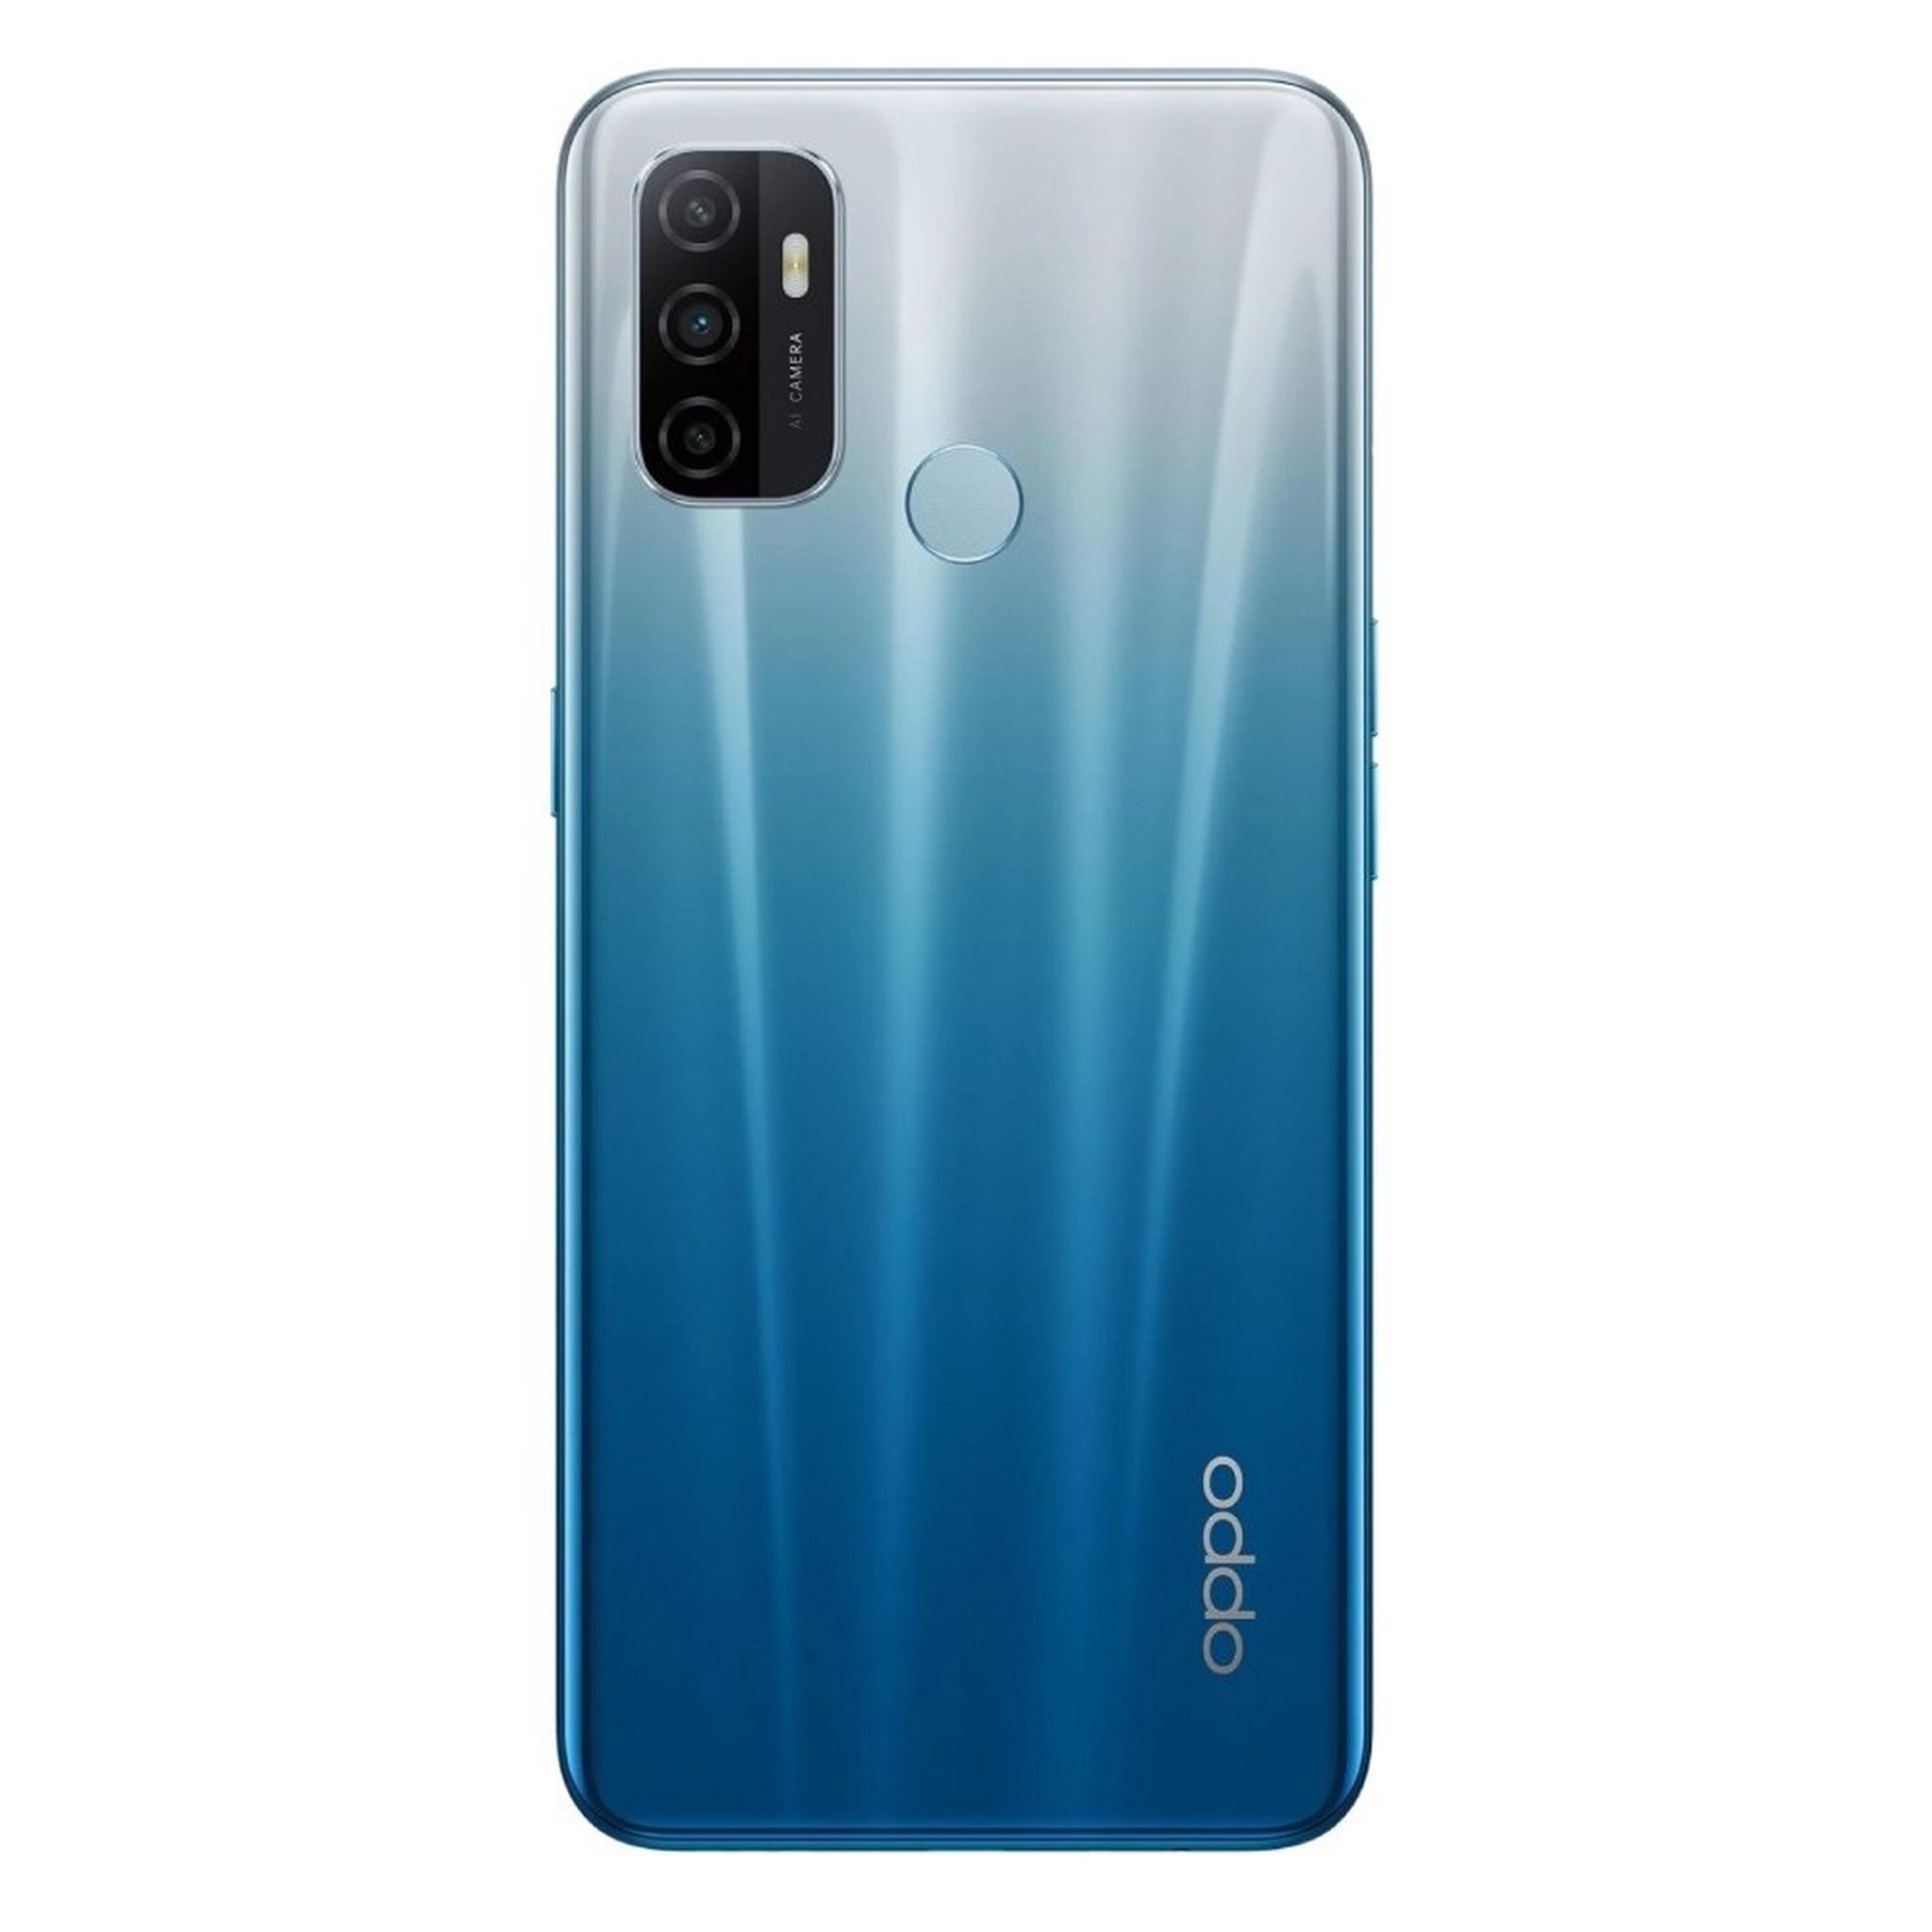 Oppo A53 64GB Dual Sim Phone - Fancy Blue